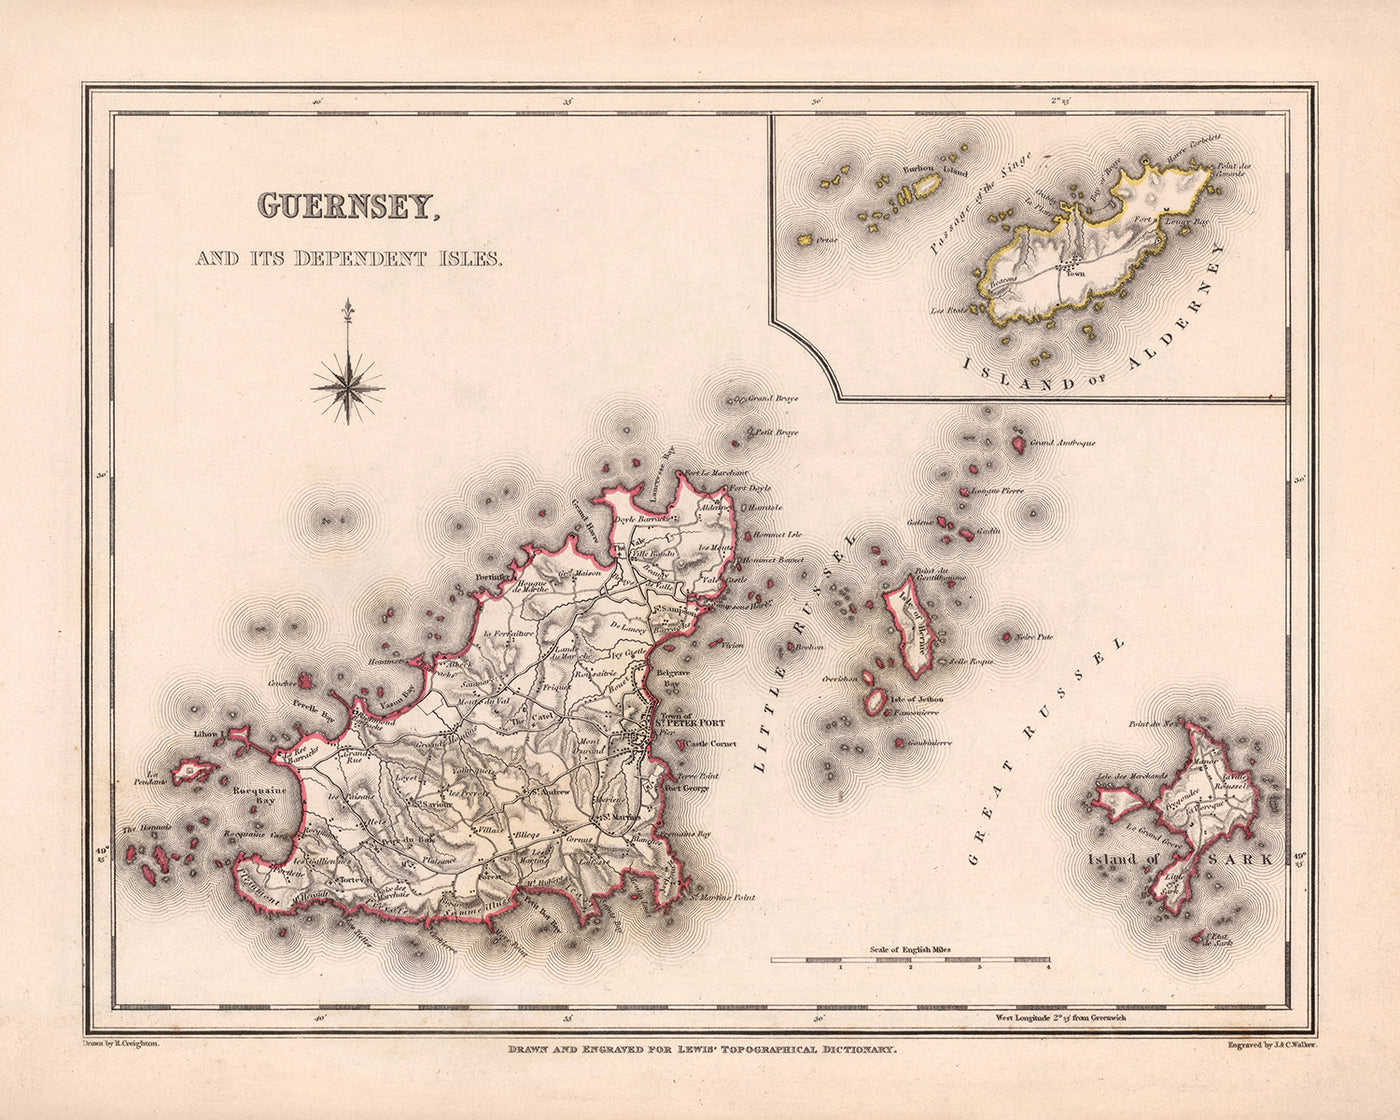 Alte Karte von Guernsey von Samuel Lewis, 1844: St. Peter Port, St. Sampson, Vale, Castel, Sark